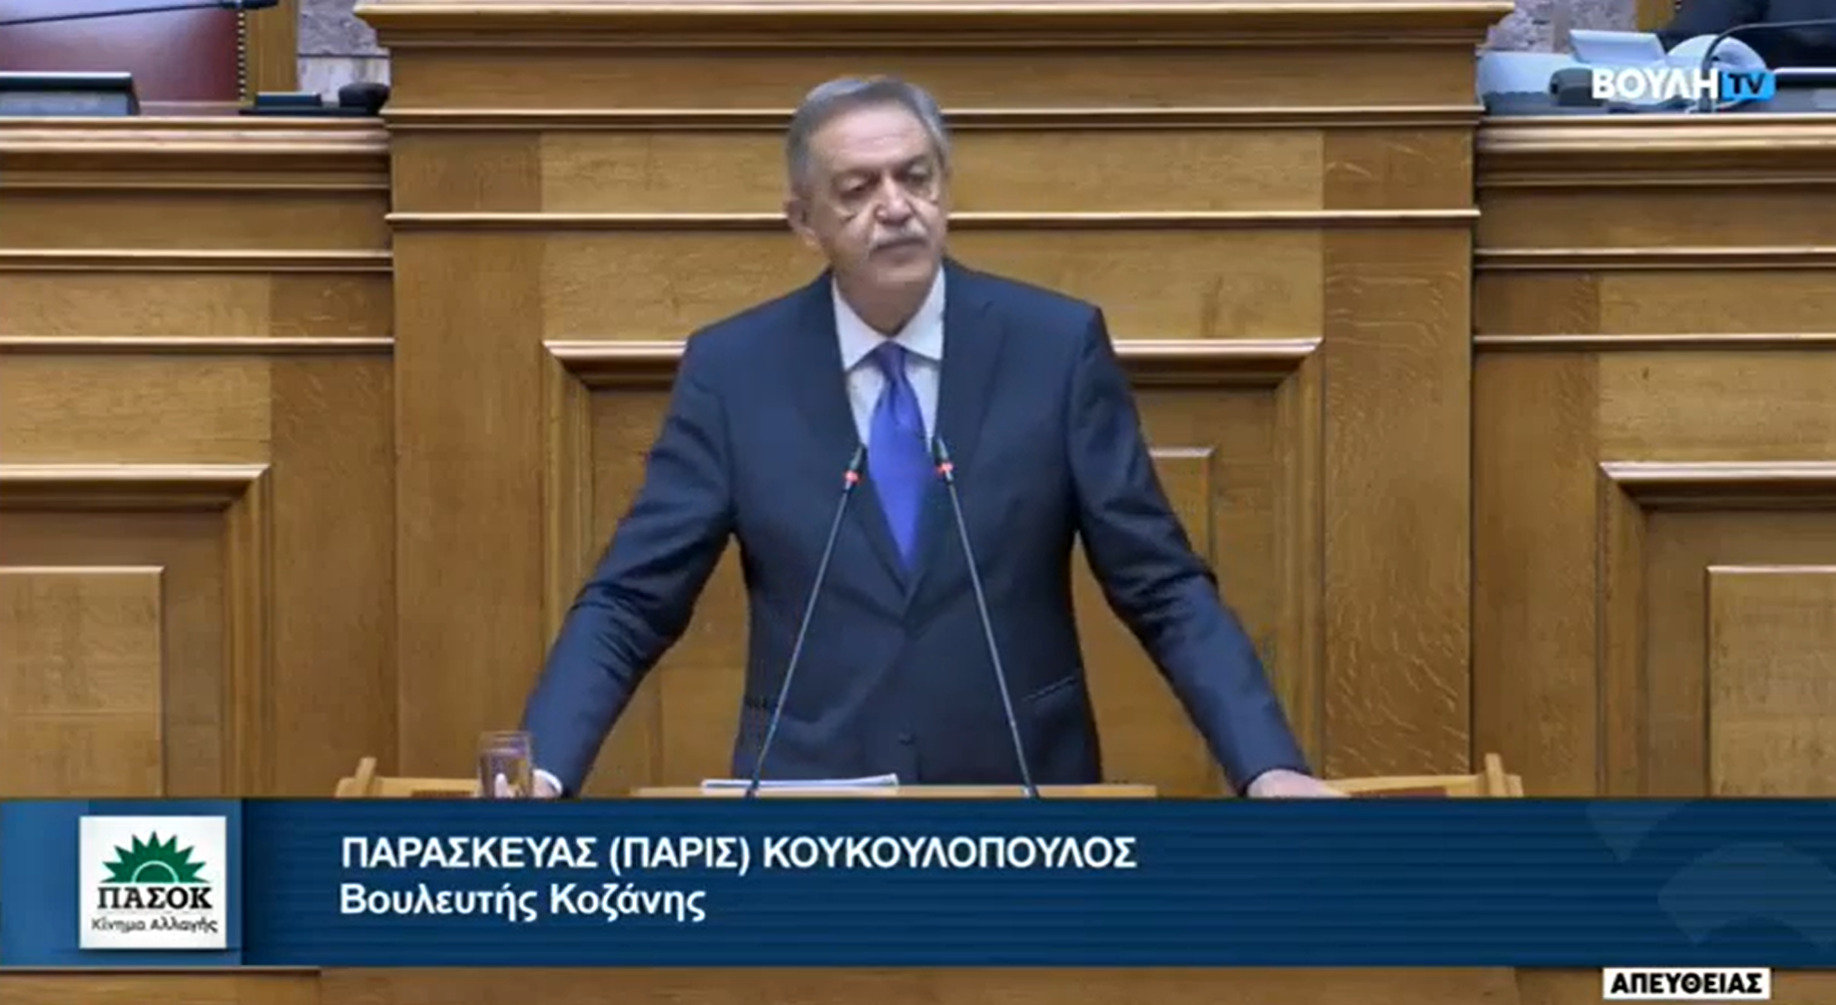 Π. Κουκουλόπουλος: Οι προτάσεις του ΠΑΣΟΚ απέναντι στο ολιγοπώλιο που στηρίζει η κυβέρνηση στην ενέργεια